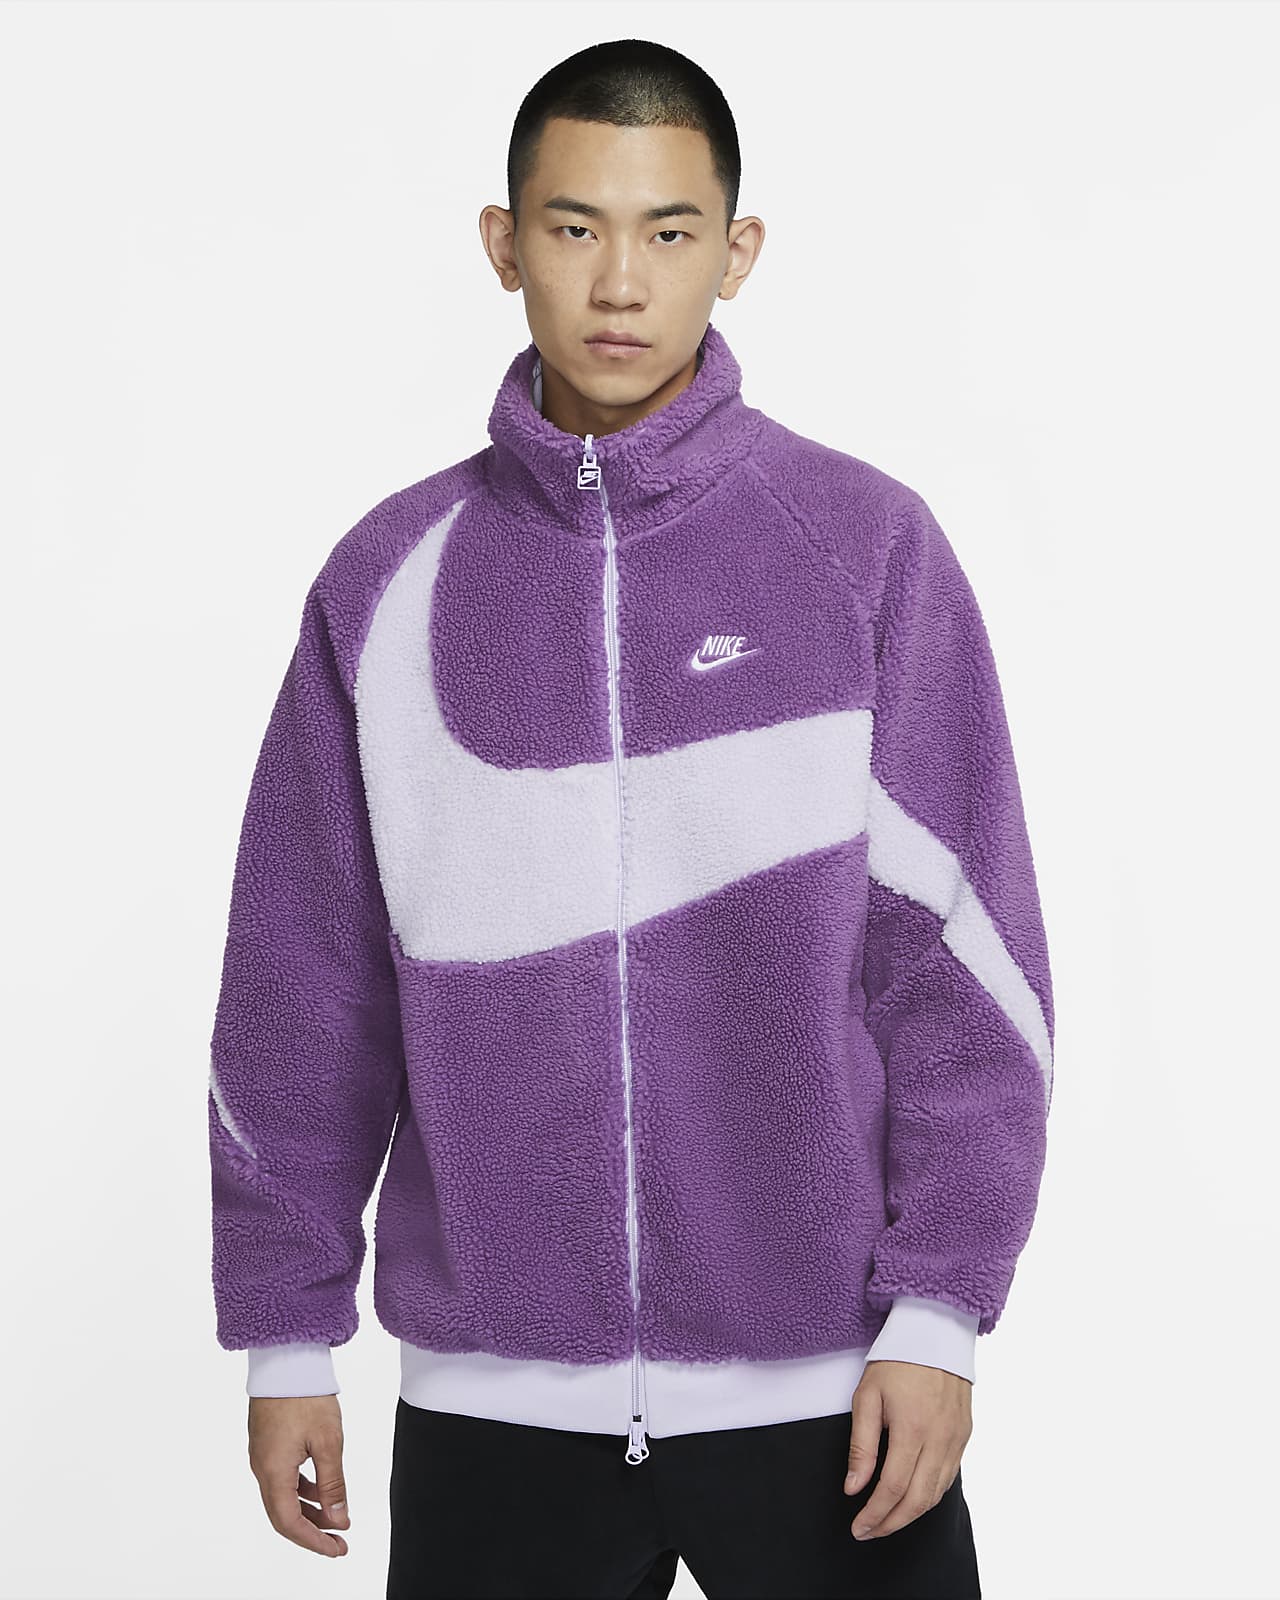 rafael nadal purple jacket